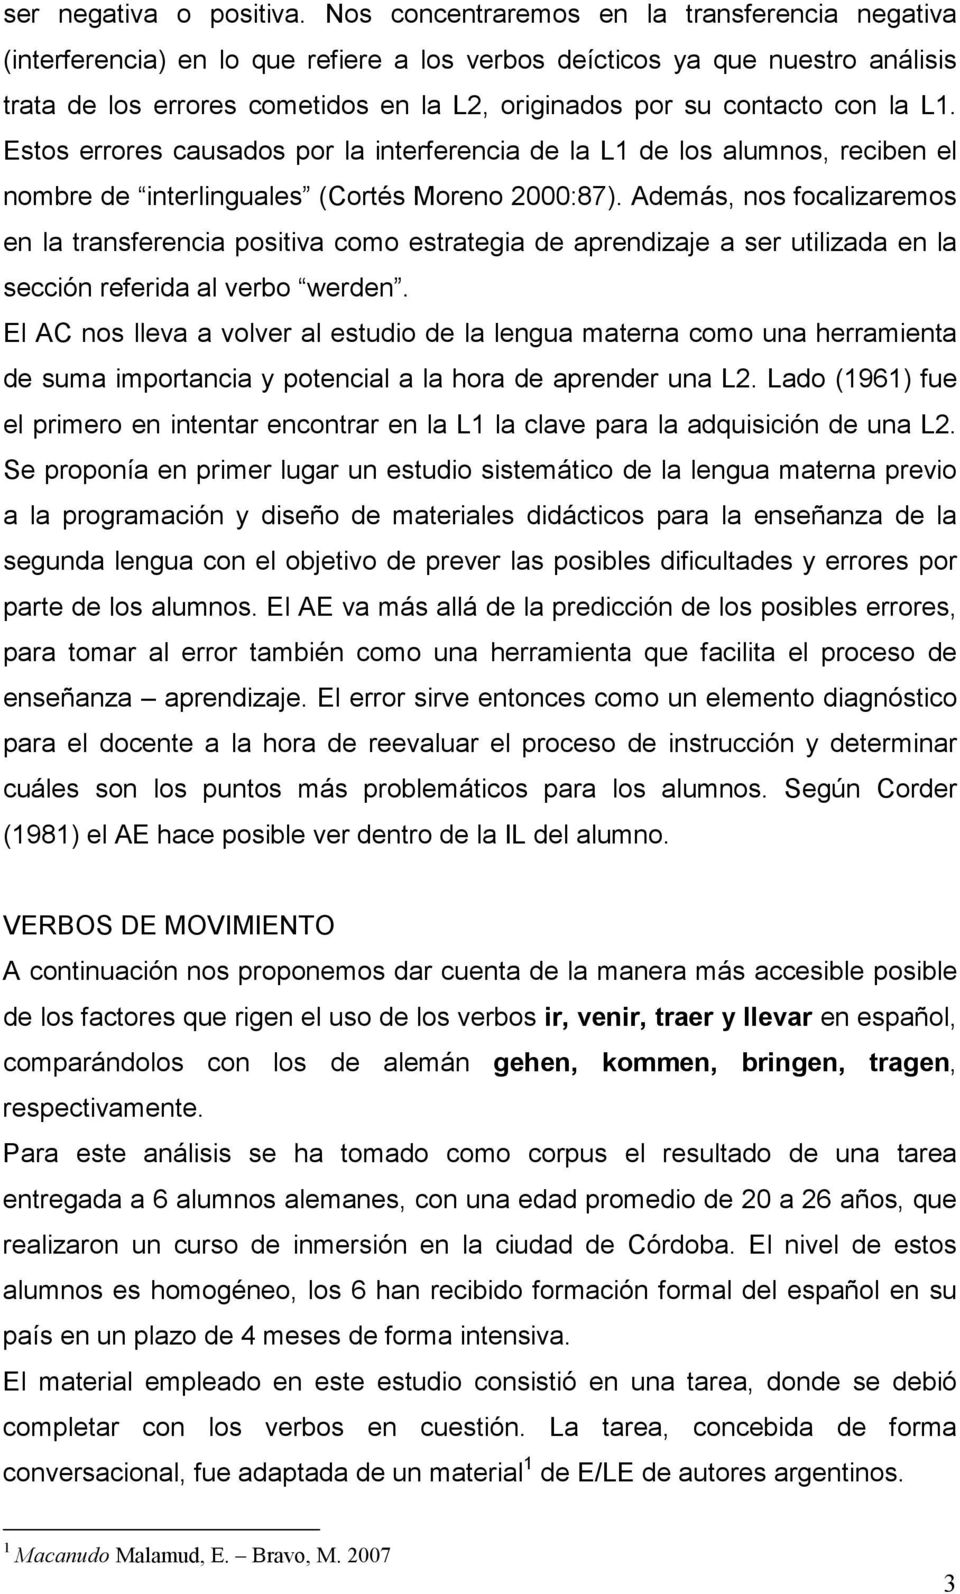 con la L1. Estos errores causados por la interferencia de la L1 de los alumnos, reciben el nombre de interlinguales (Cortés Moreno 2000:87).